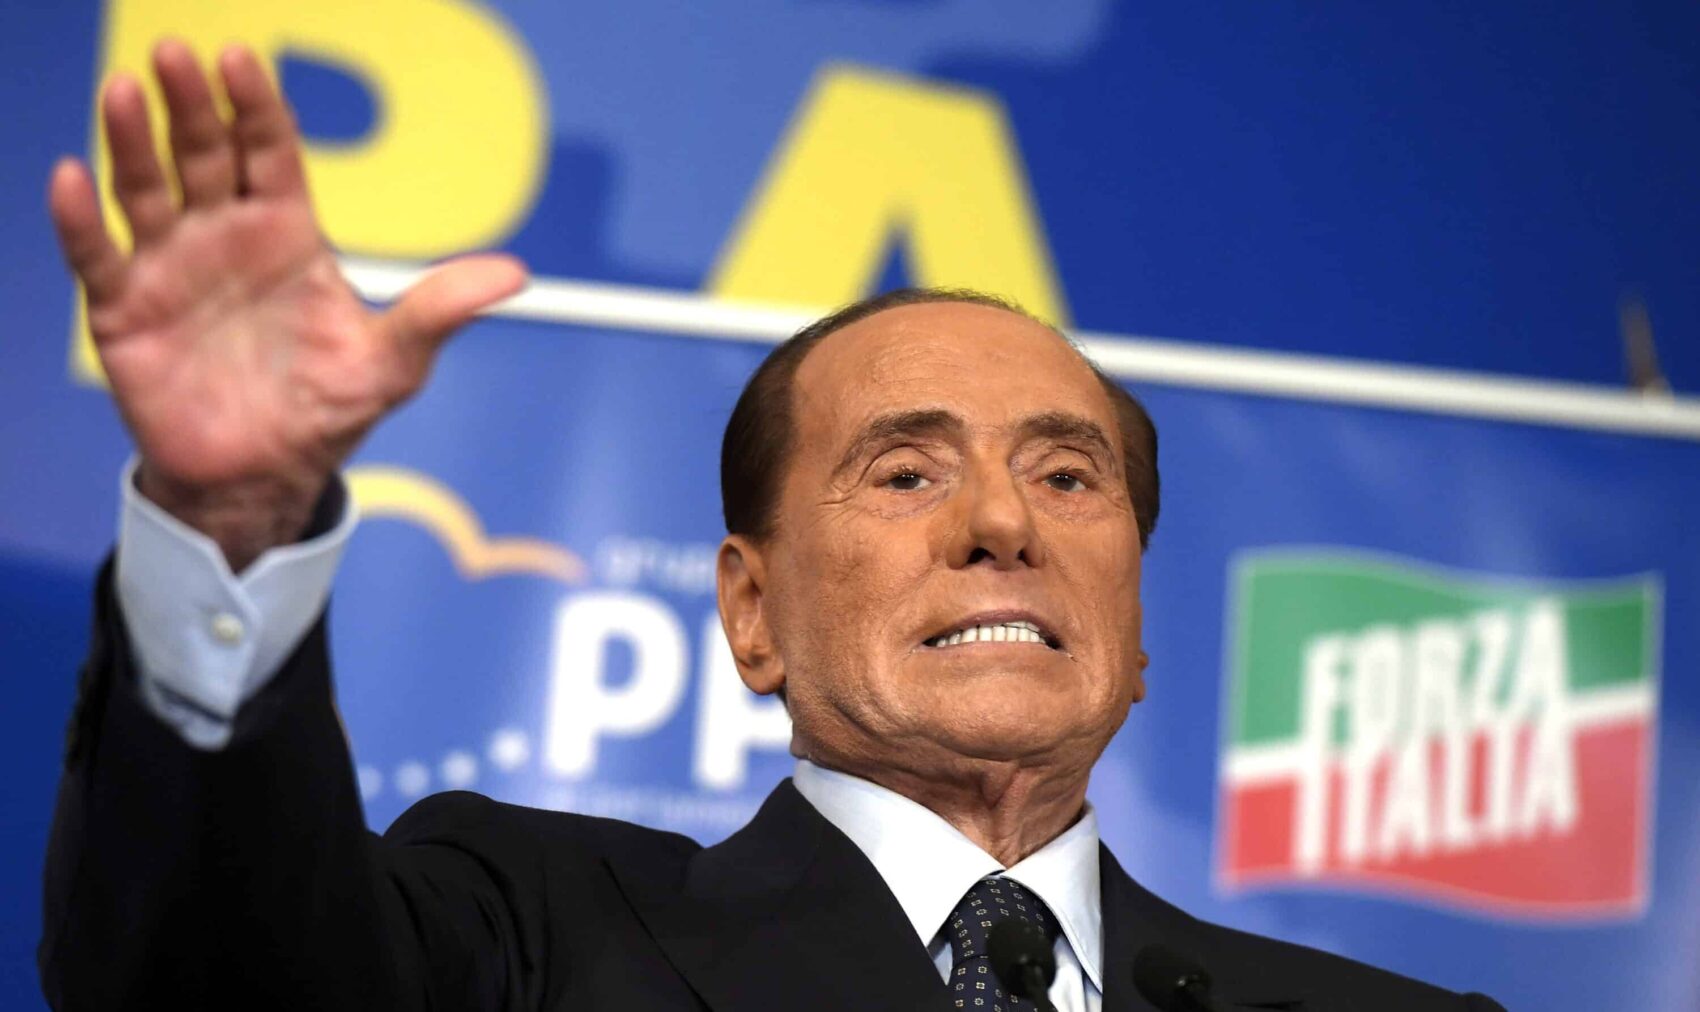 Silvio è un cataclisma per l’Italia ma adesso lo si può solo santificare. C’è la malattia: chi parla di scandali e condanne è linciato e su giornali e tv pure a sinistra la memoria vacilla